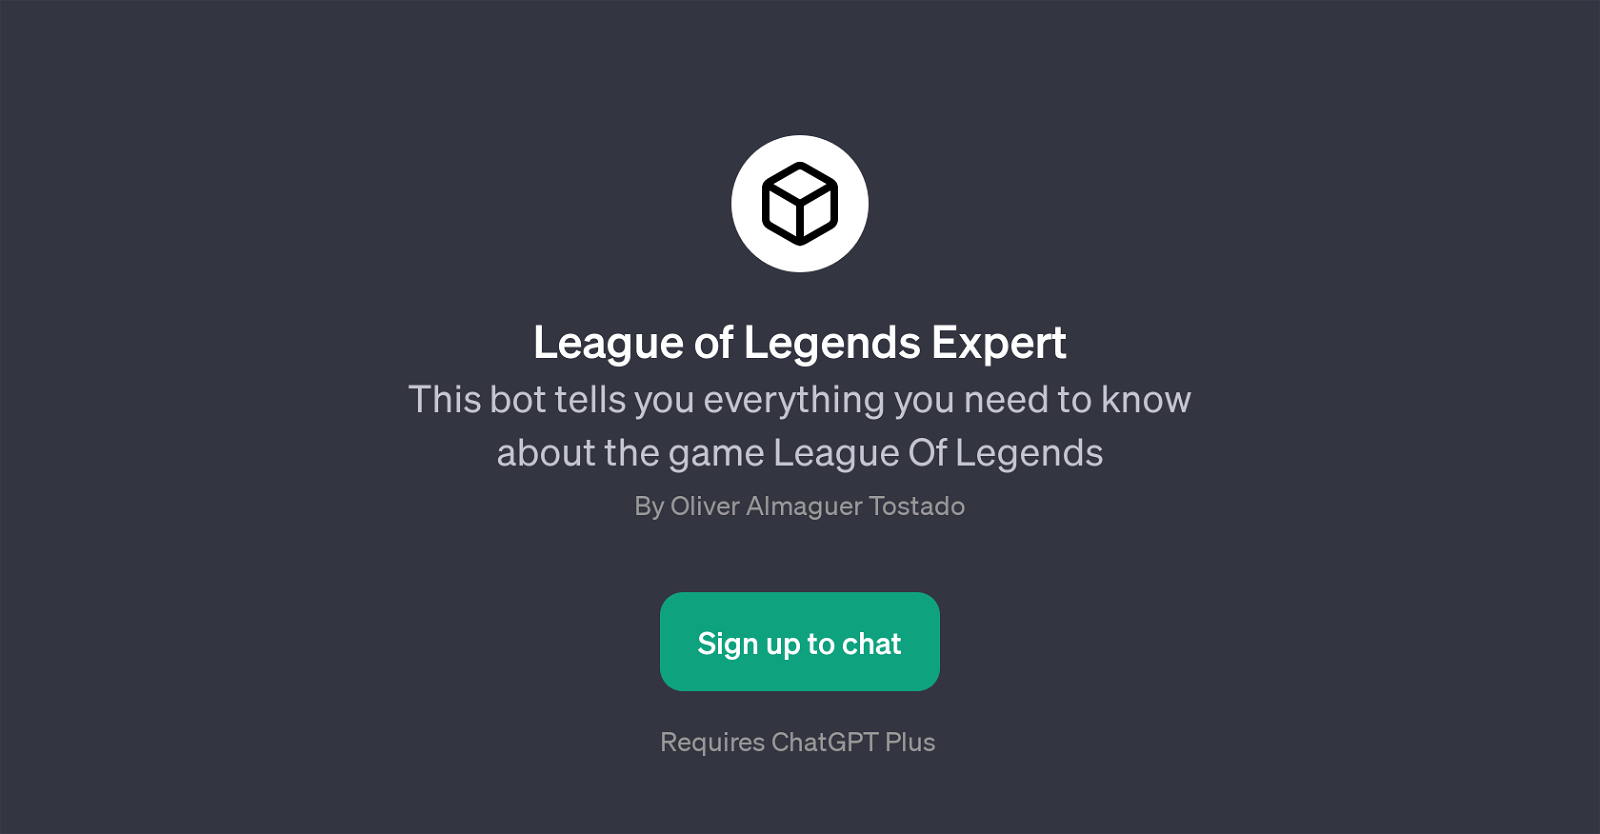 League of Legends Expert website